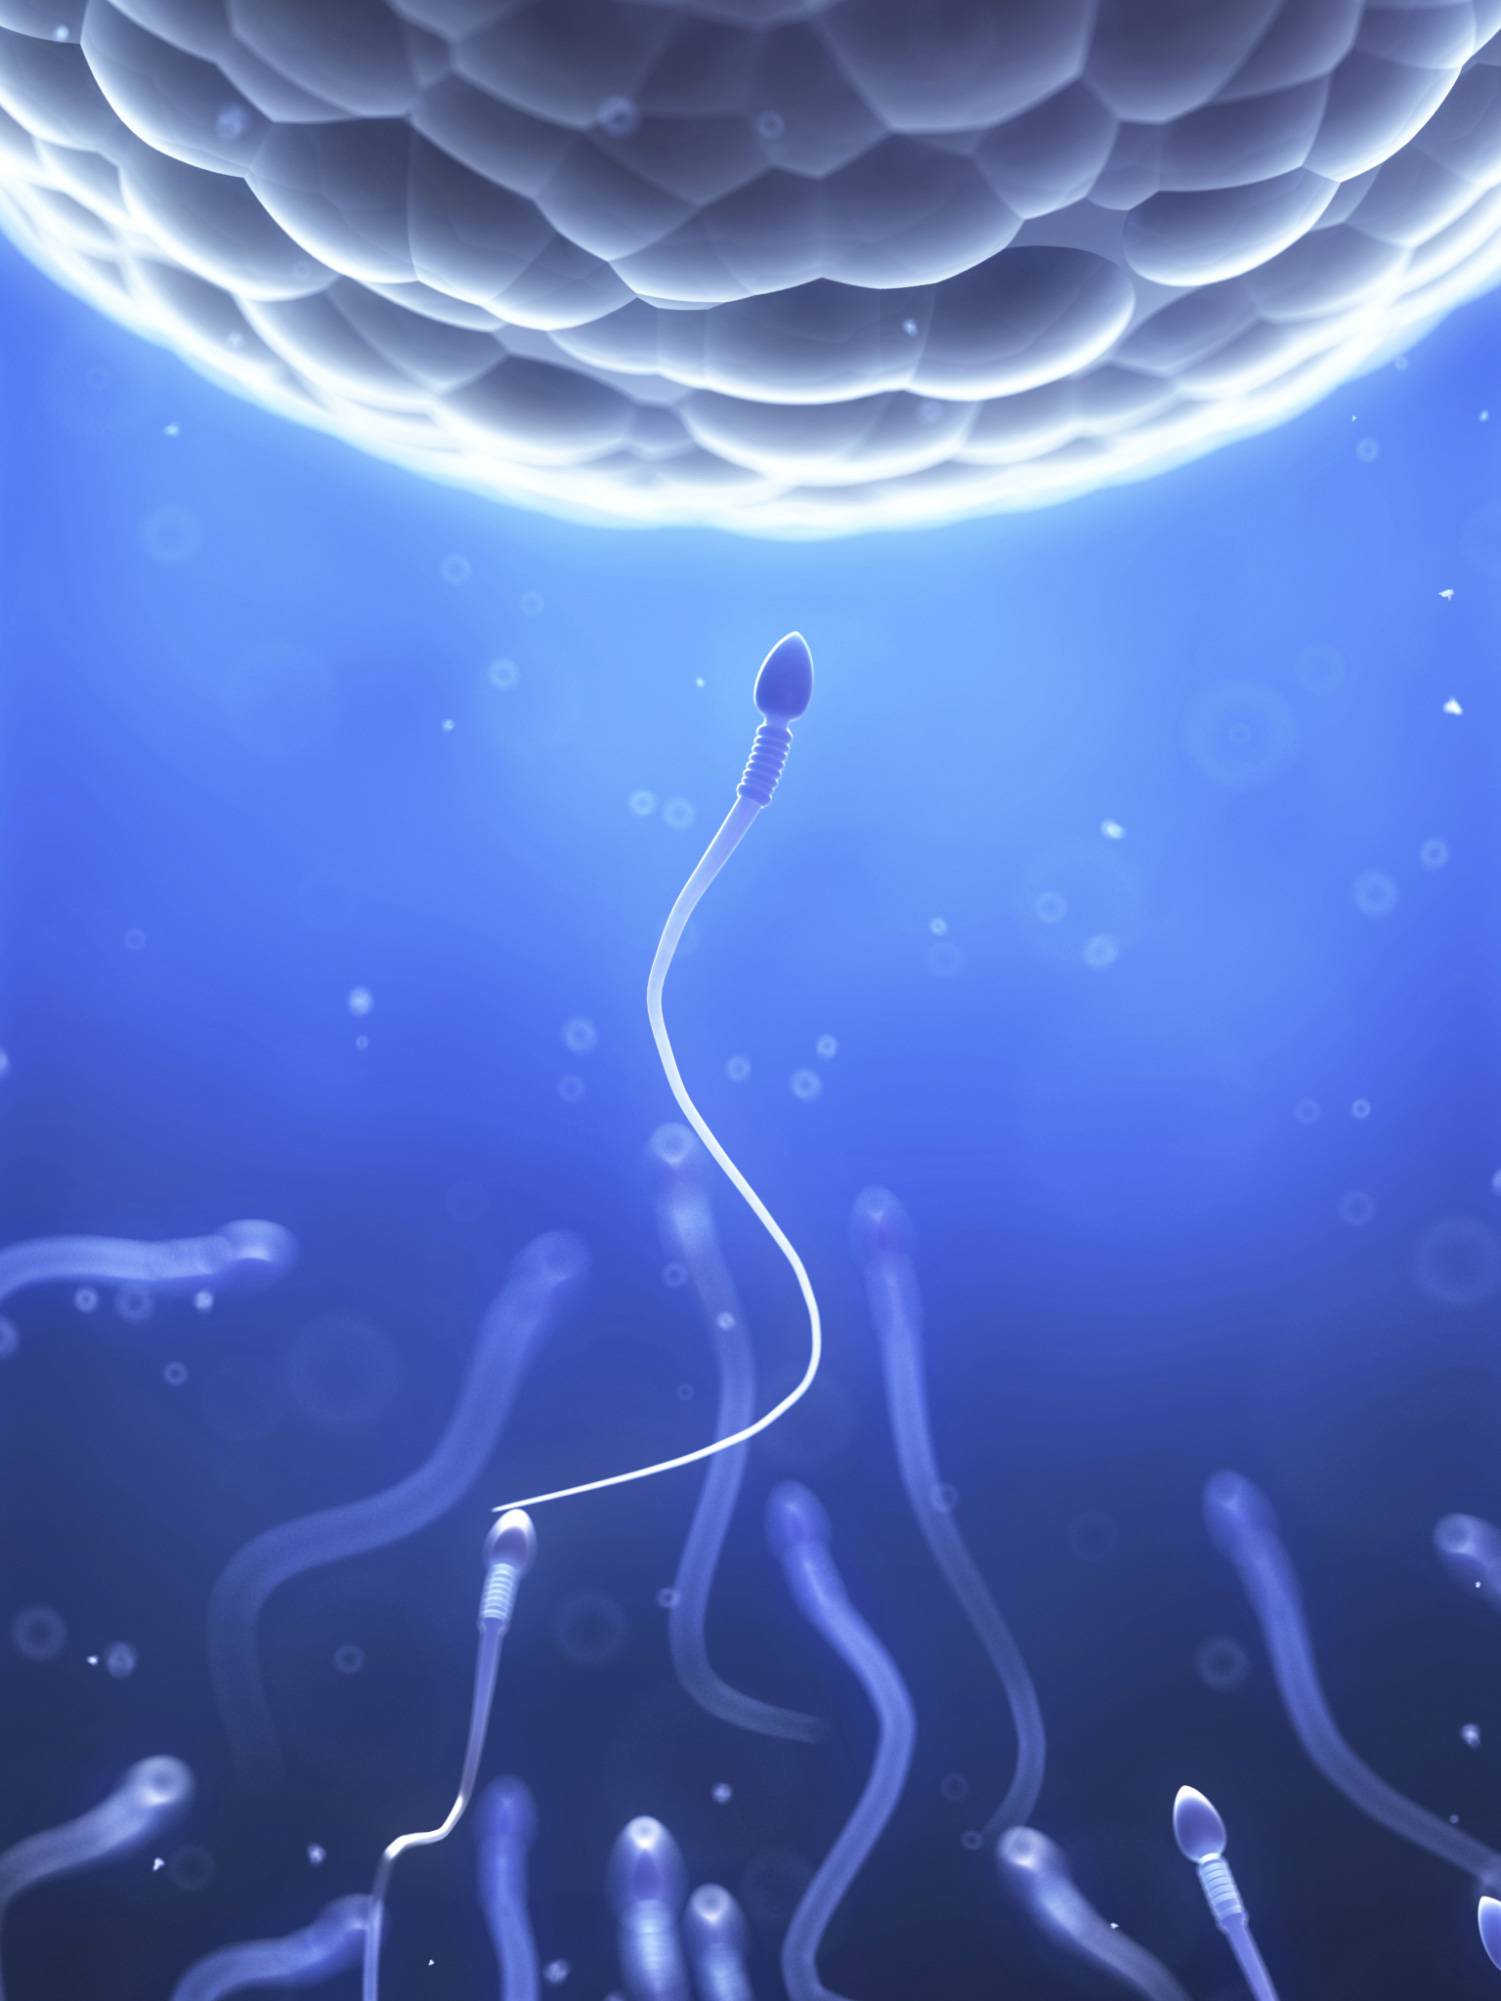 20160329 sperm - Il numero di spermatozoi da una generazione all’altra non è pari a quello di una generazione e in futuro potrebbe essere ereditato da spermatozoi artificiali.